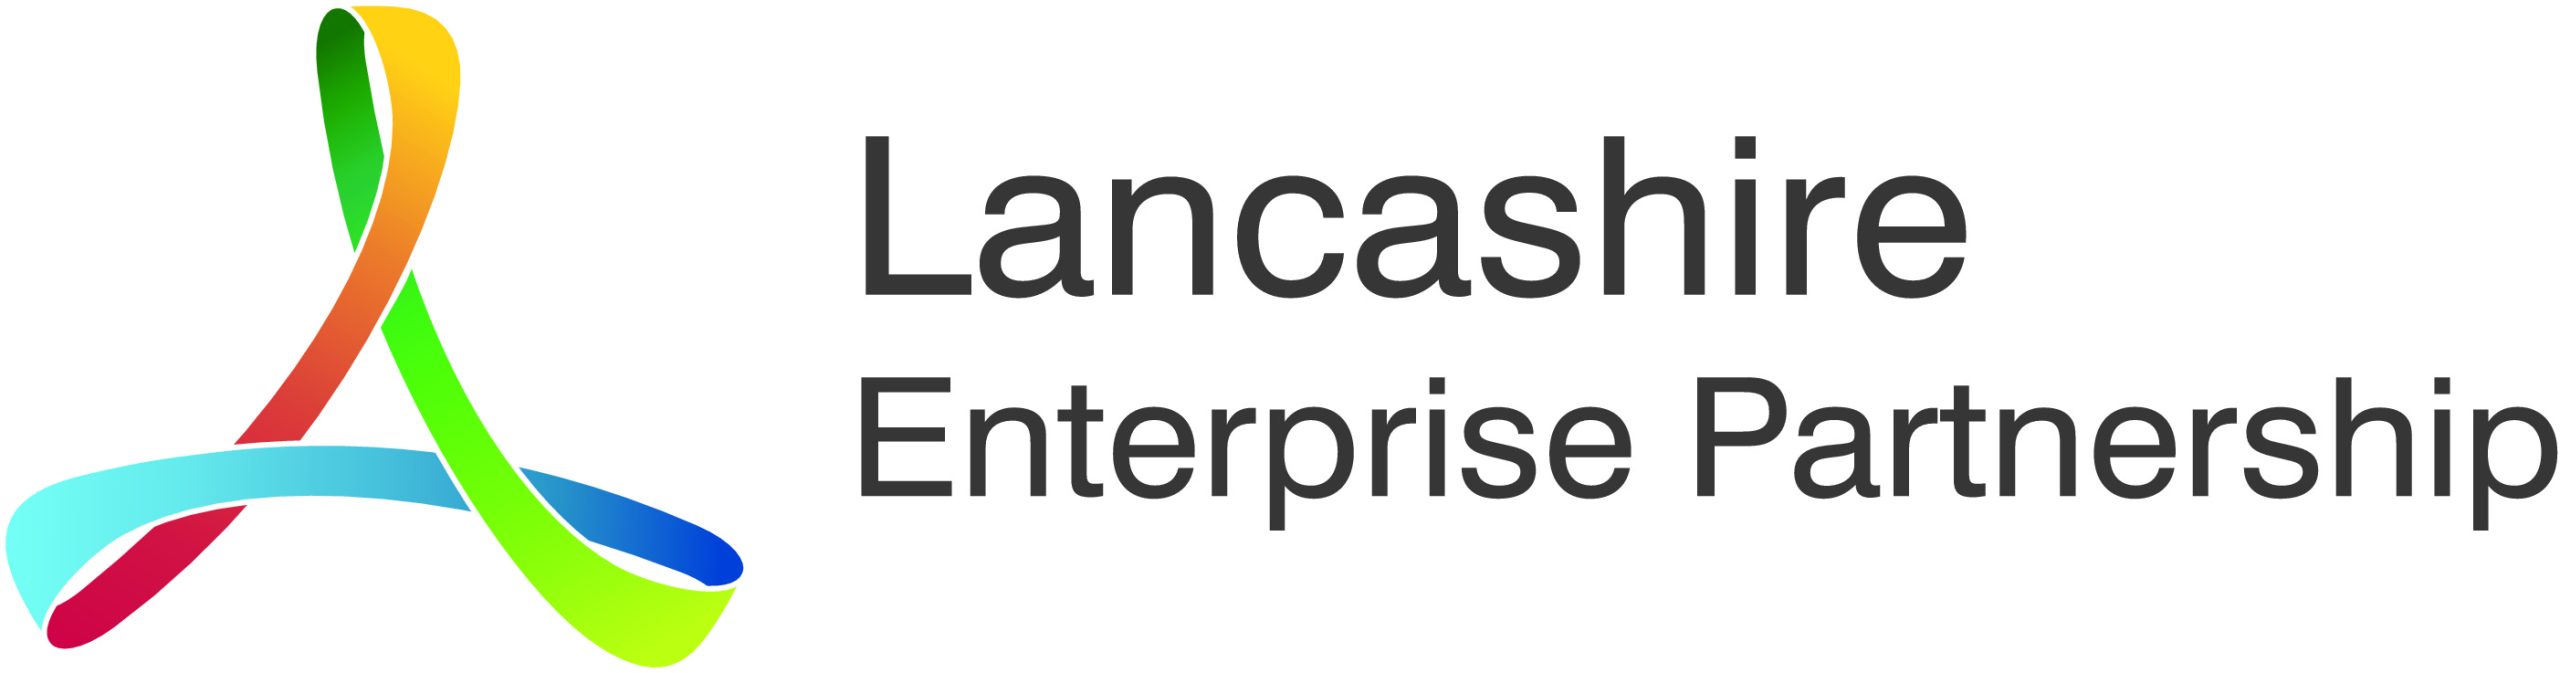 Future U partnered with institution Lancashire Enterprise Partnership